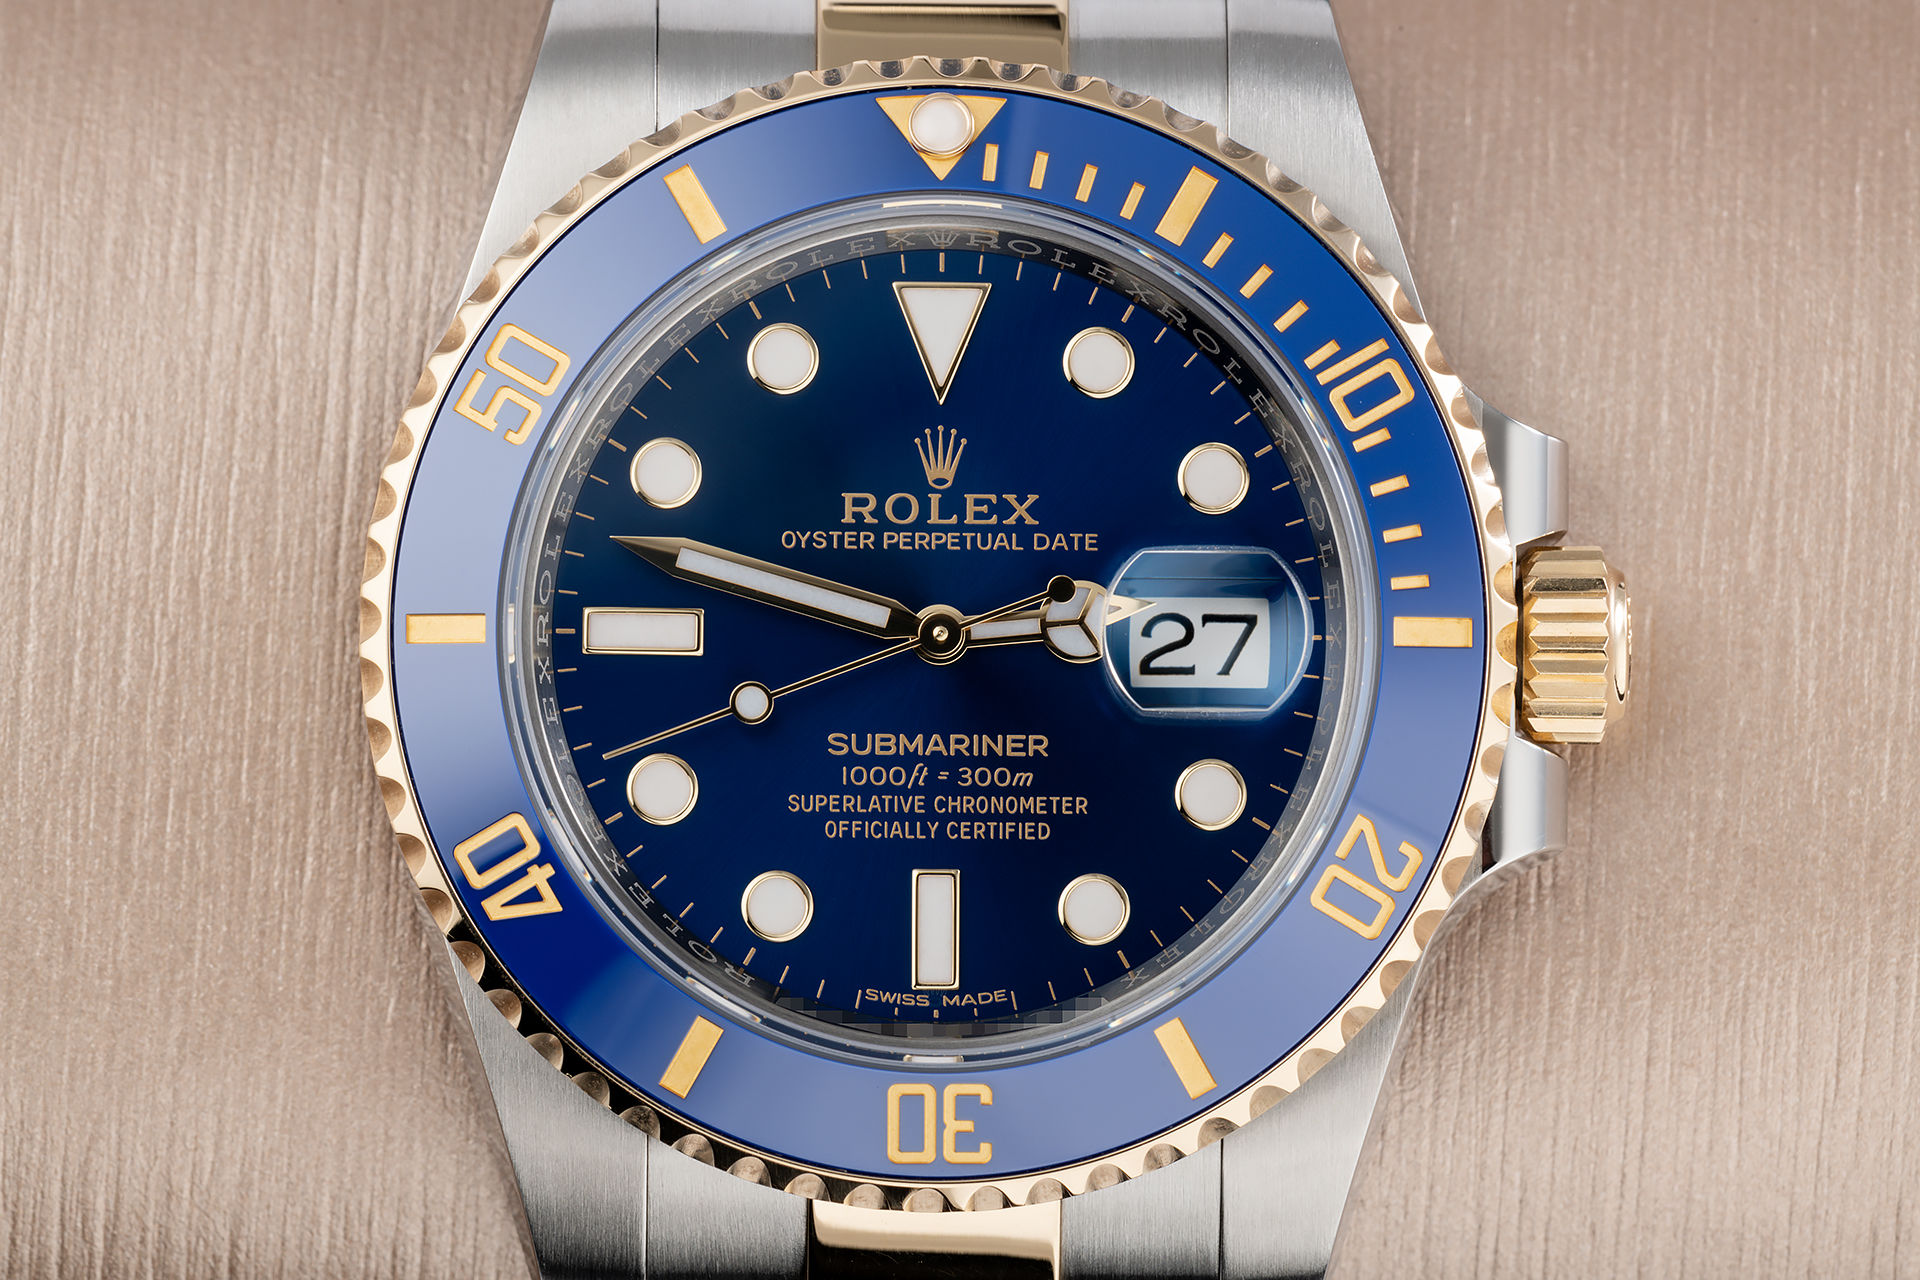 ref 116613LB | Brand New '5 Year Warranty' | Rolex Submariner Date